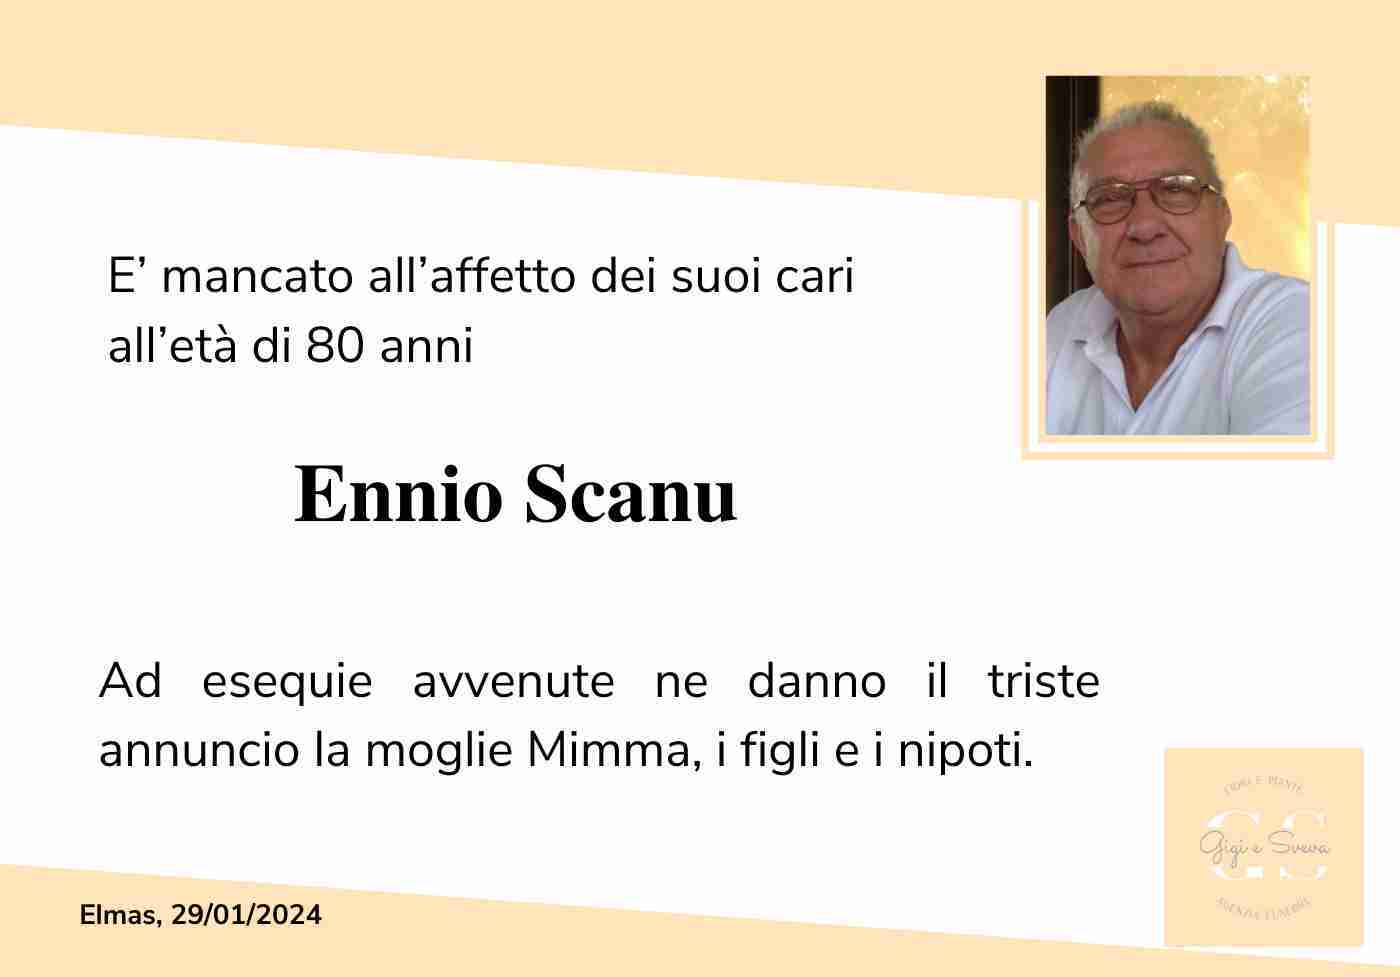 Ennio Scanu